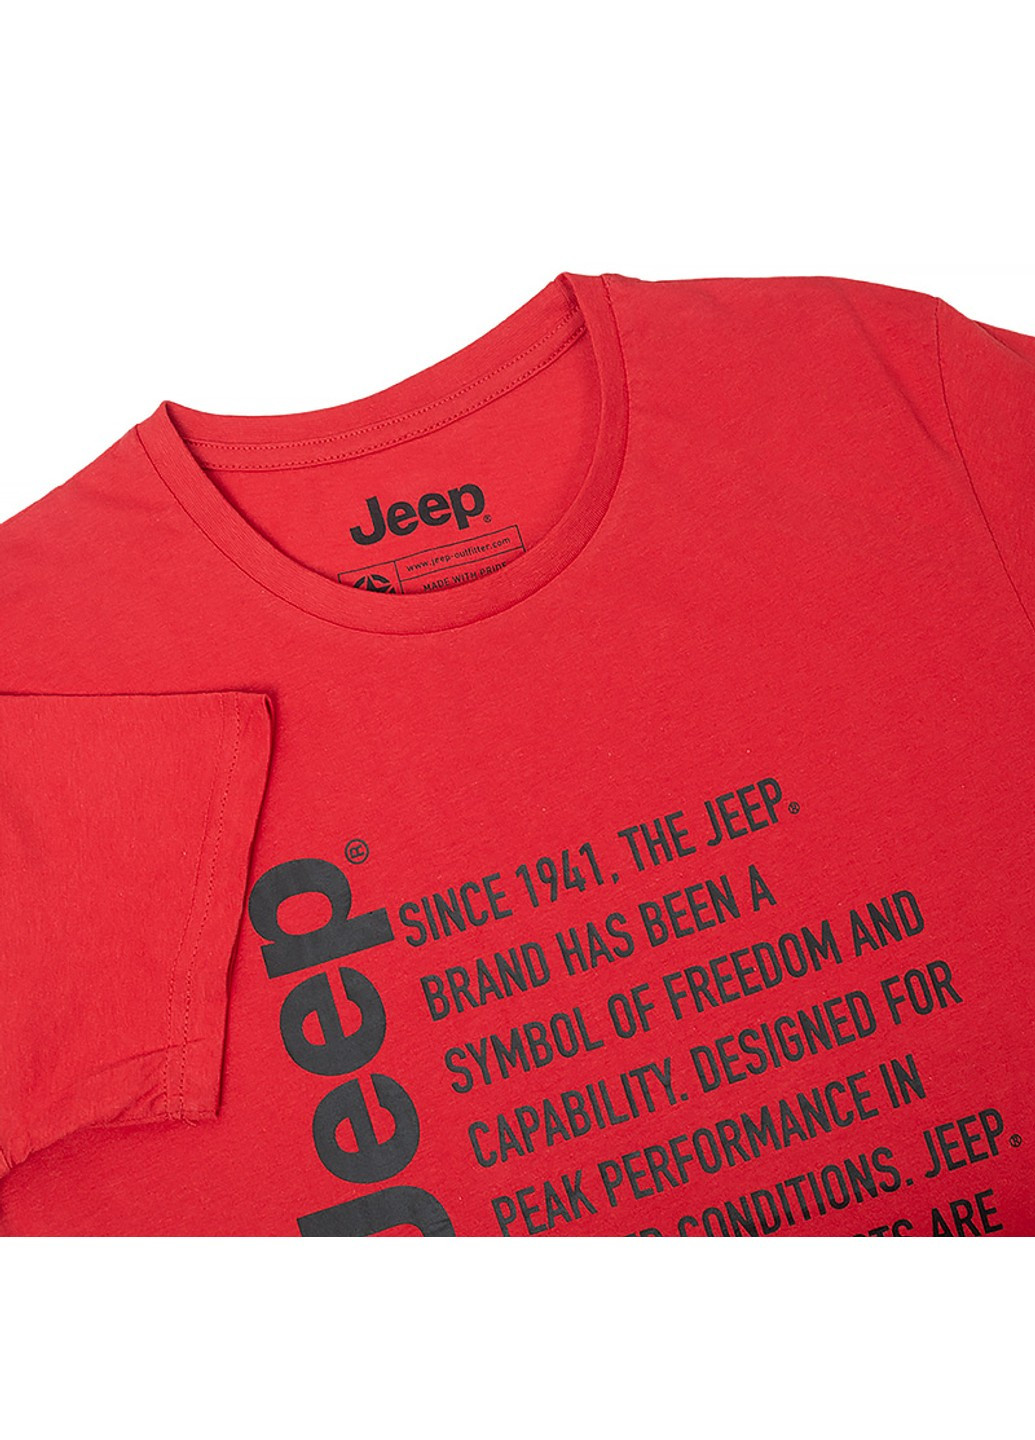 Червона футболка t-shirt since 1941 Jeep